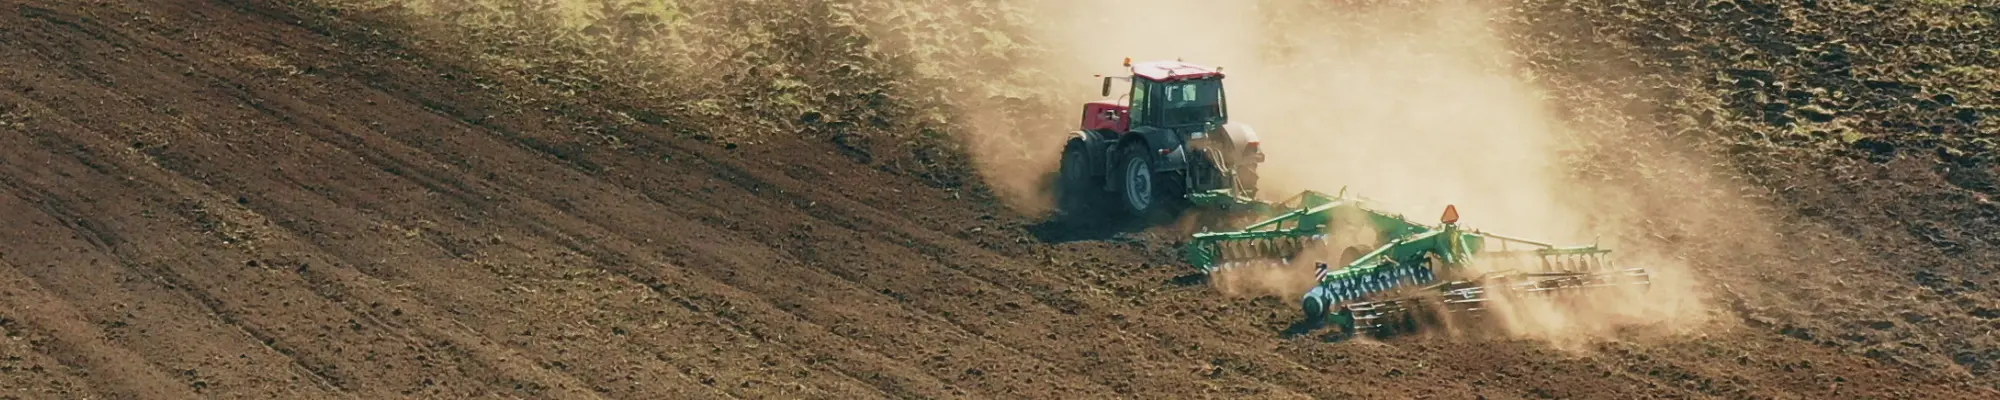 Traktor im Einsatz auf dem Feld – Förderung umweltbewusster Landwirtschaft mit World Climate Farm Tool für Klimabilanzen